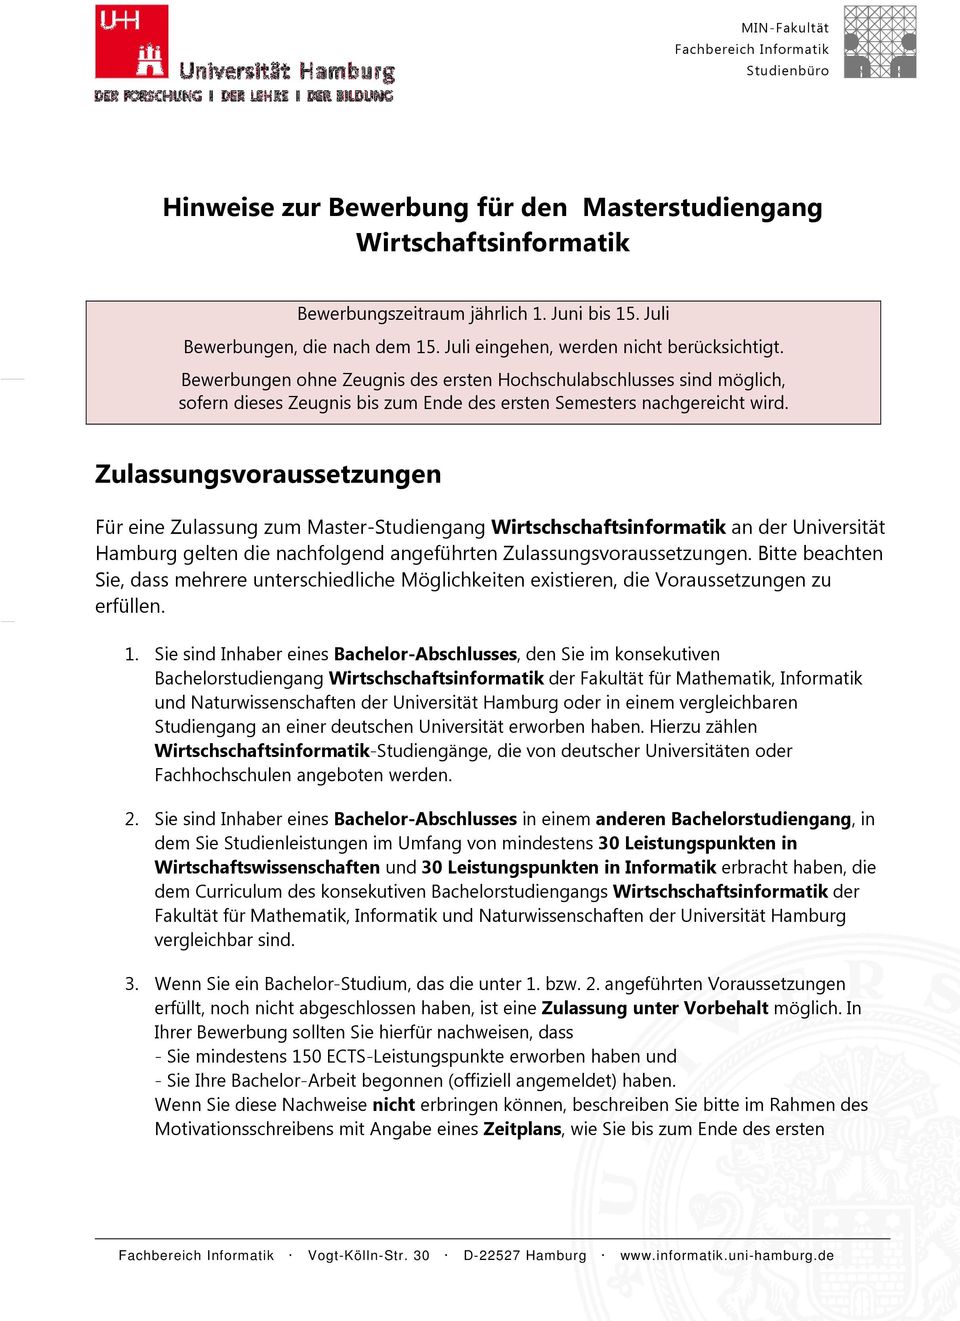 Zulassungsvoraussetzungen Für eine Zulassung zum Master-Studiengang Wirtschschaftsinformatik an der Universität Hamburg gelten die nachfolgend angeführten Zulassungsvoraussetzungen.